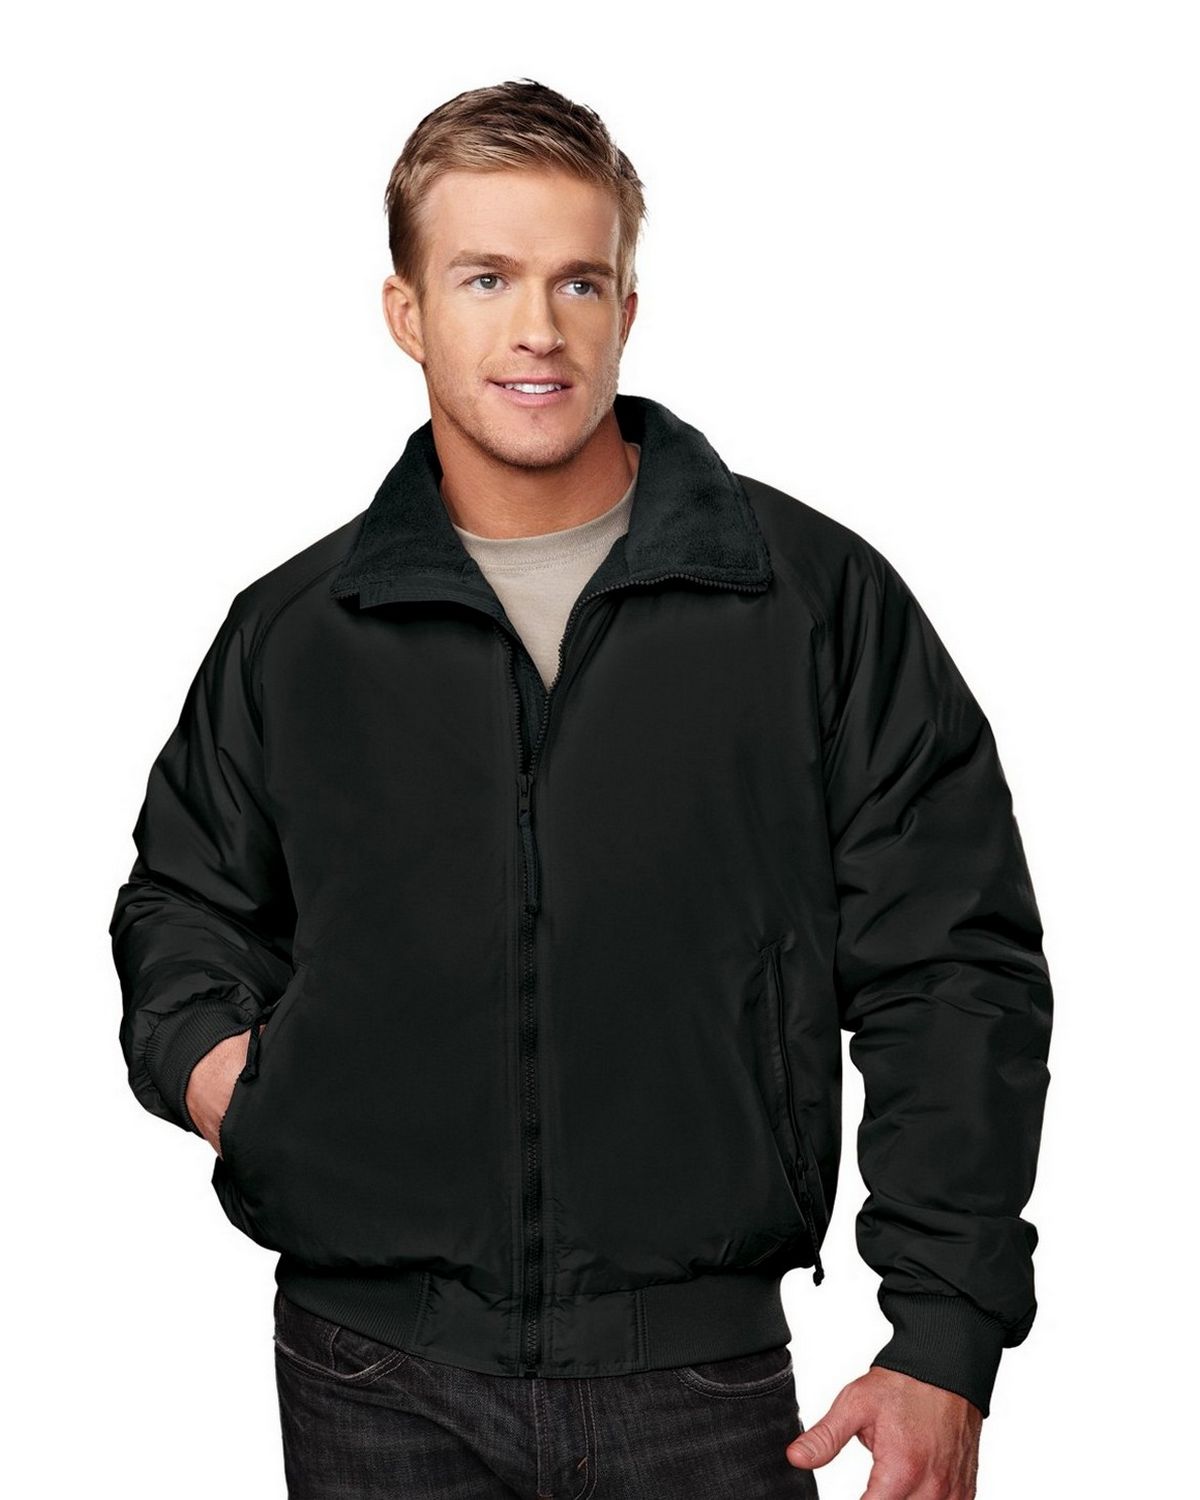 Tri-Mountain 8090 Nylon jacket with fleece lining